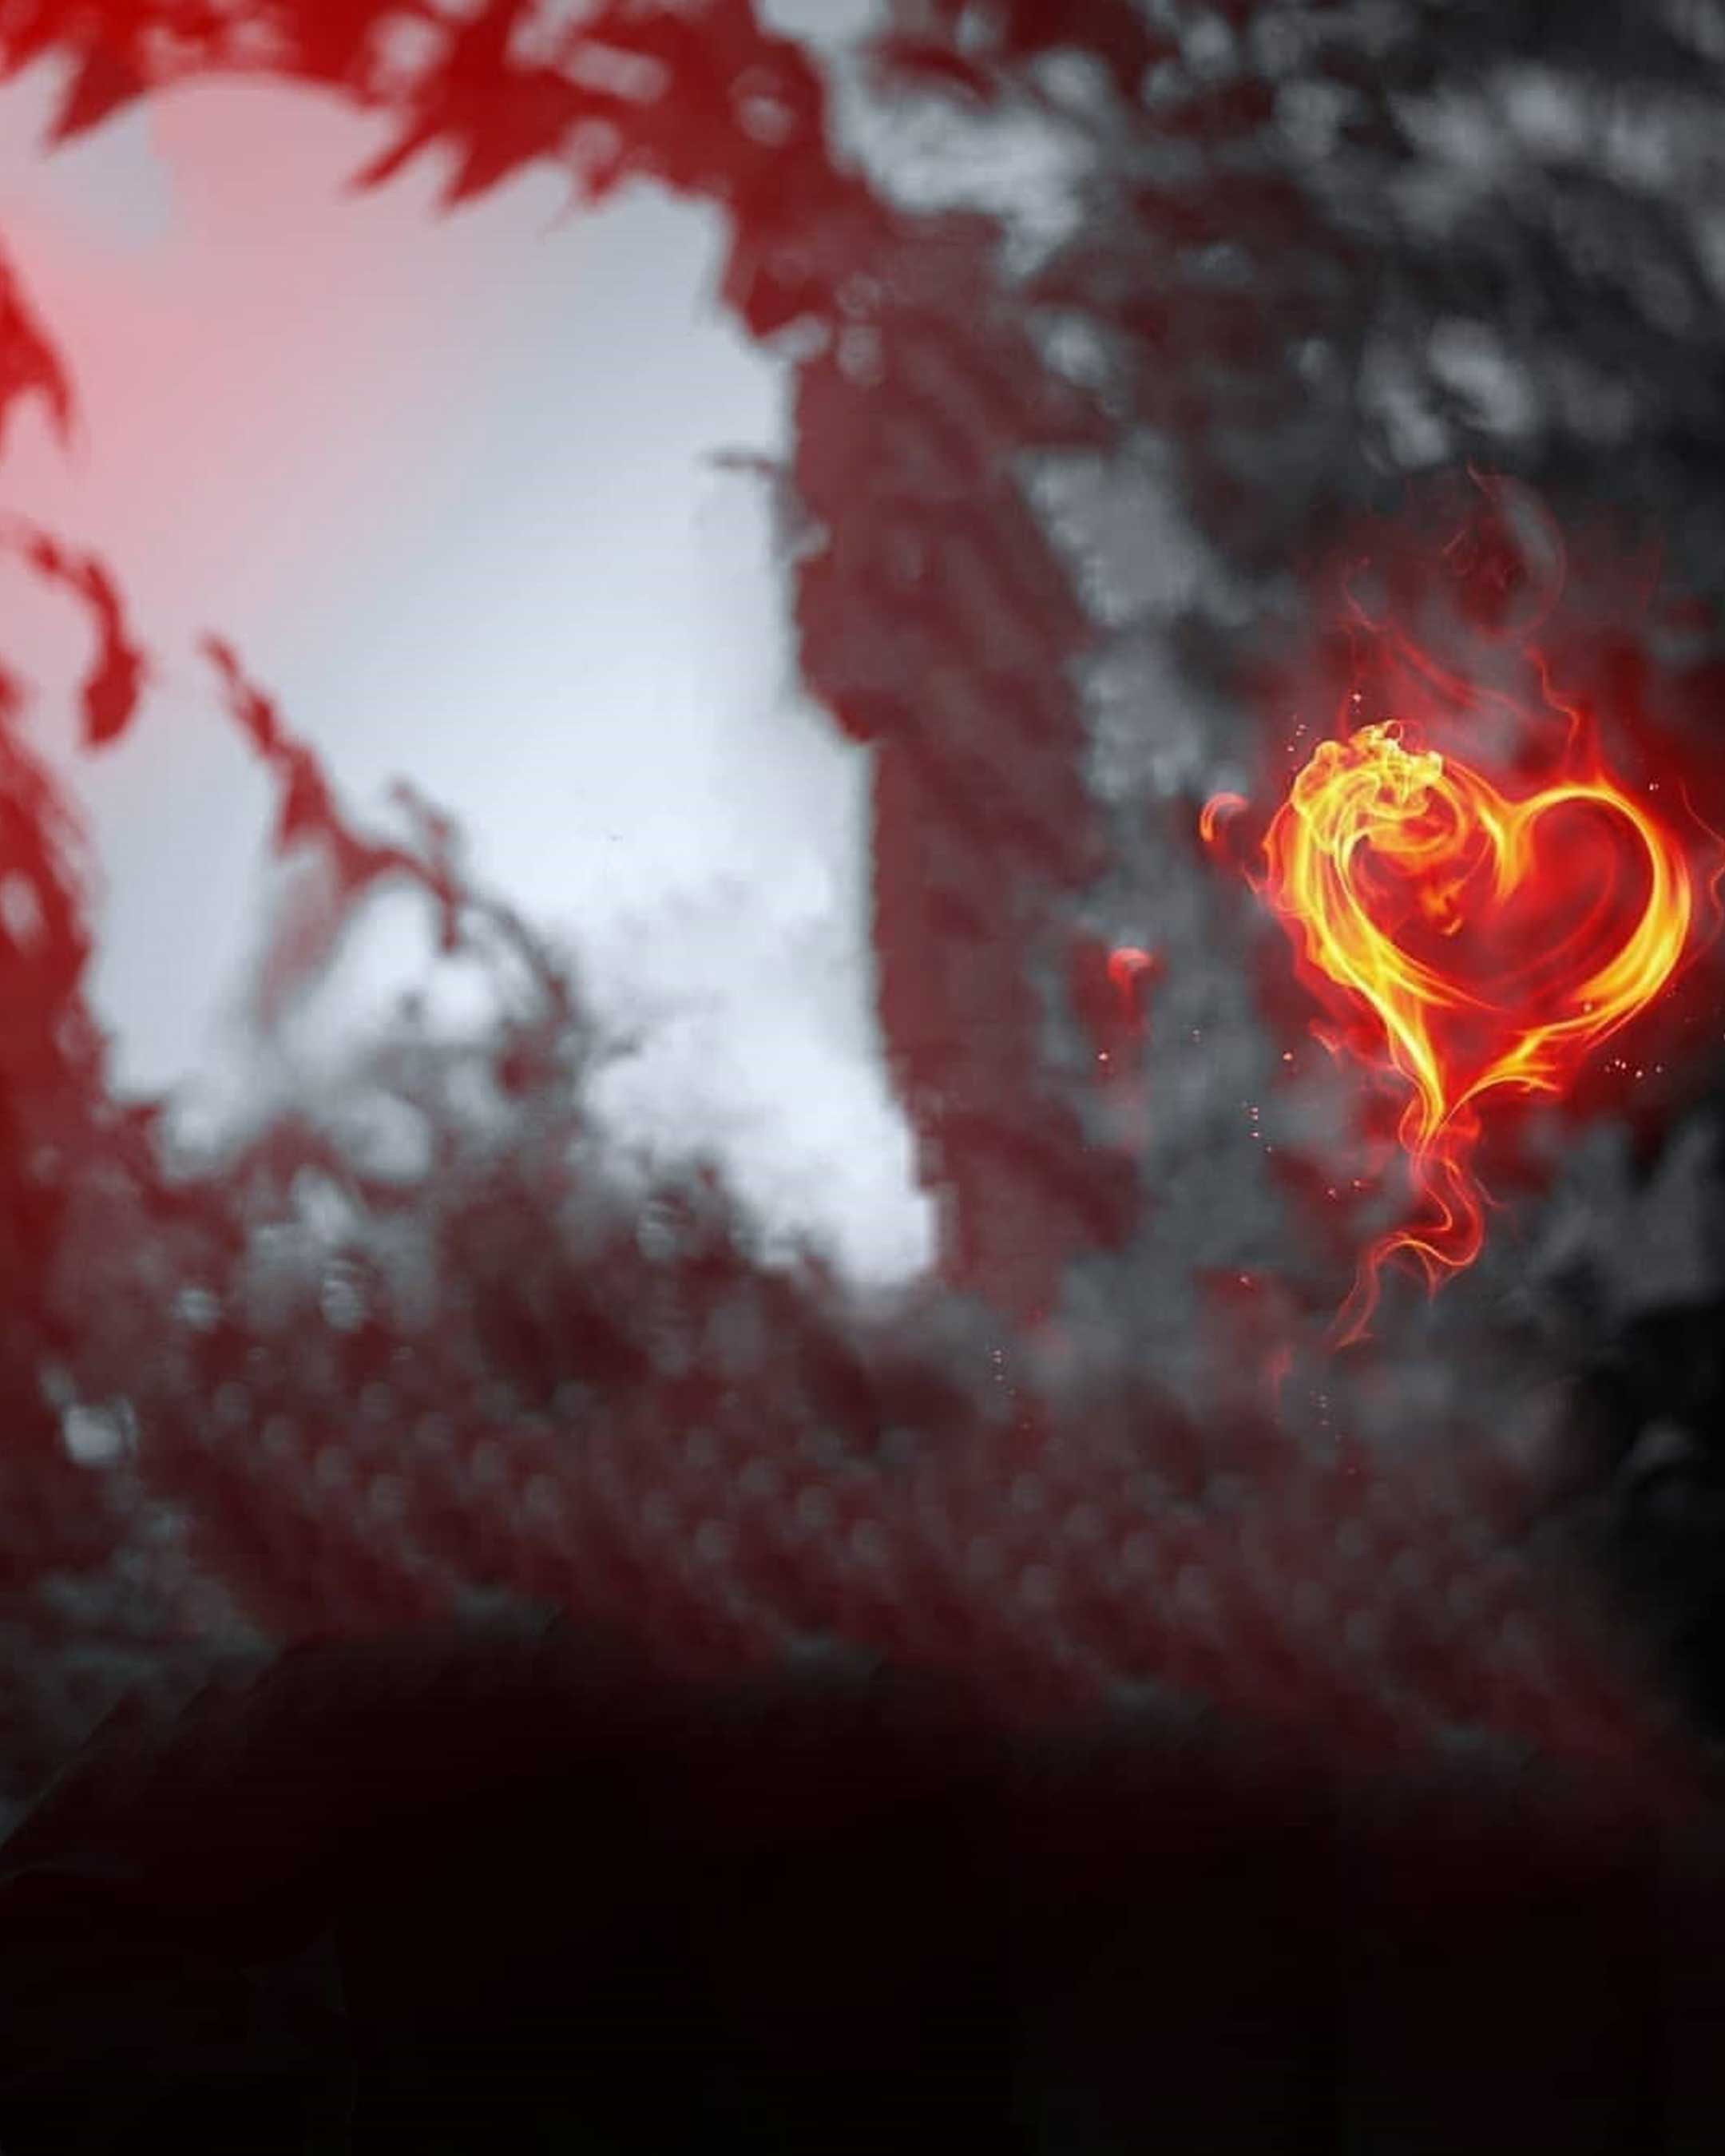 Burning Heart Shape Snapseed Background Free Stock Photo - Tận hưởng một bức ảnh nền lửa trái tim cực kỳ năng động và ấn tượng. Được tạo ra với chất lượng cao và hoàn toàn miễn phí, bức ảnh nền này sẽ đem lại sự quyến rũ và đầy cảm xúc cho bức ảnh của bạn.